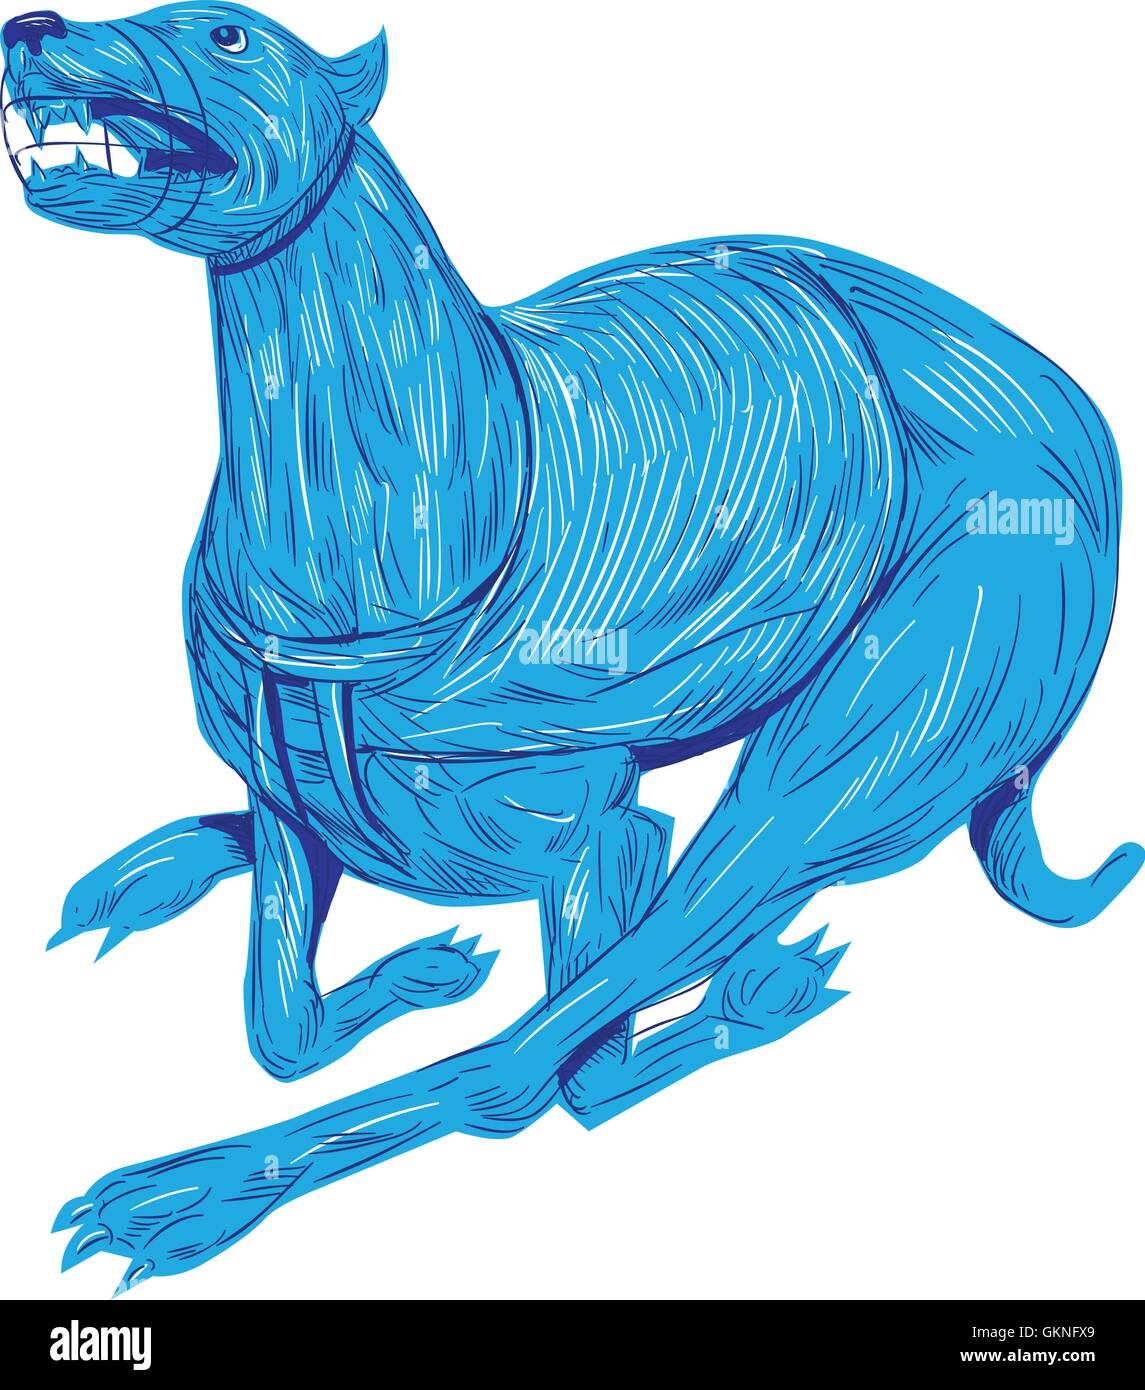 Style croquis dessin illustration d'un protecteur buccal avec chien Greyhound Racing vu du côté situé sur fond blanc isolé. Illustration de Vecteur